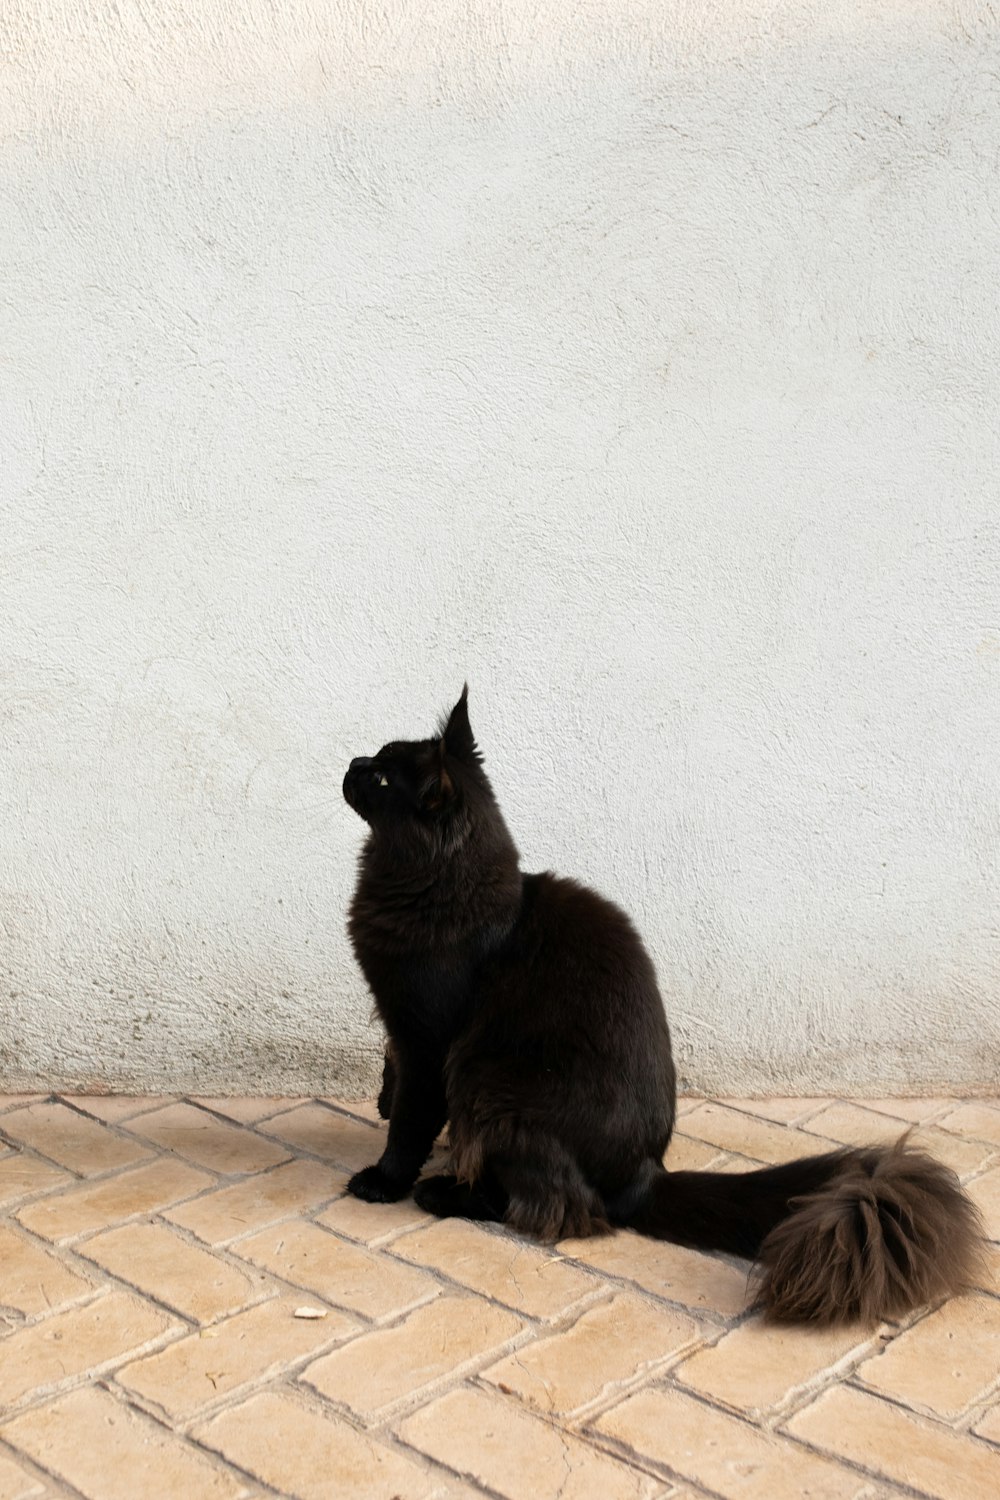 타일 바닥에 앉아 있는 검은 고양이